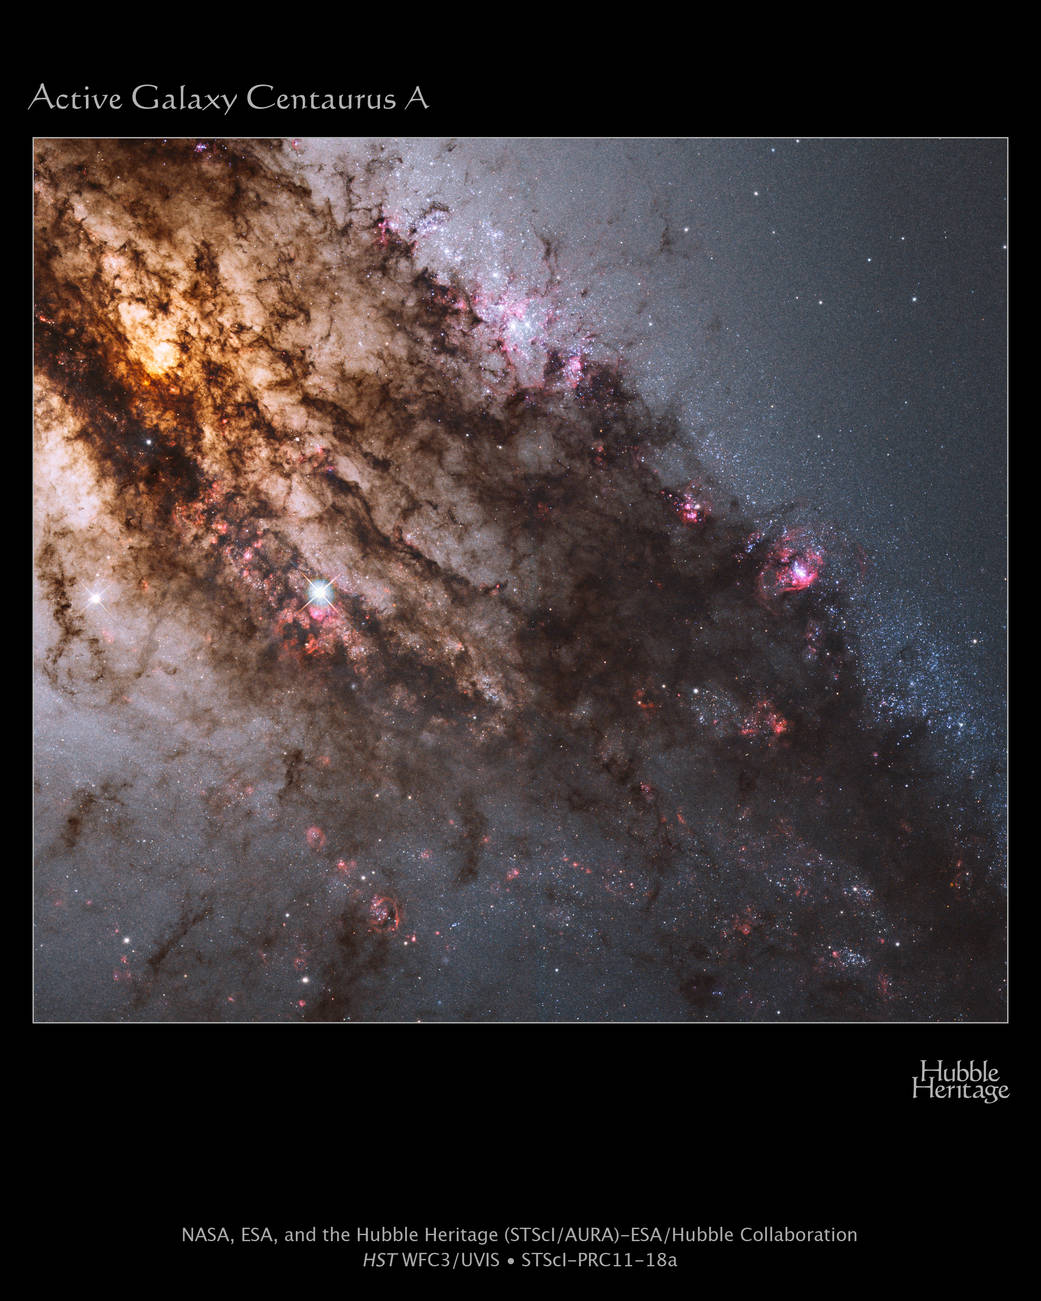 Firestorm of Star Birth in Galaxy Centaurus A